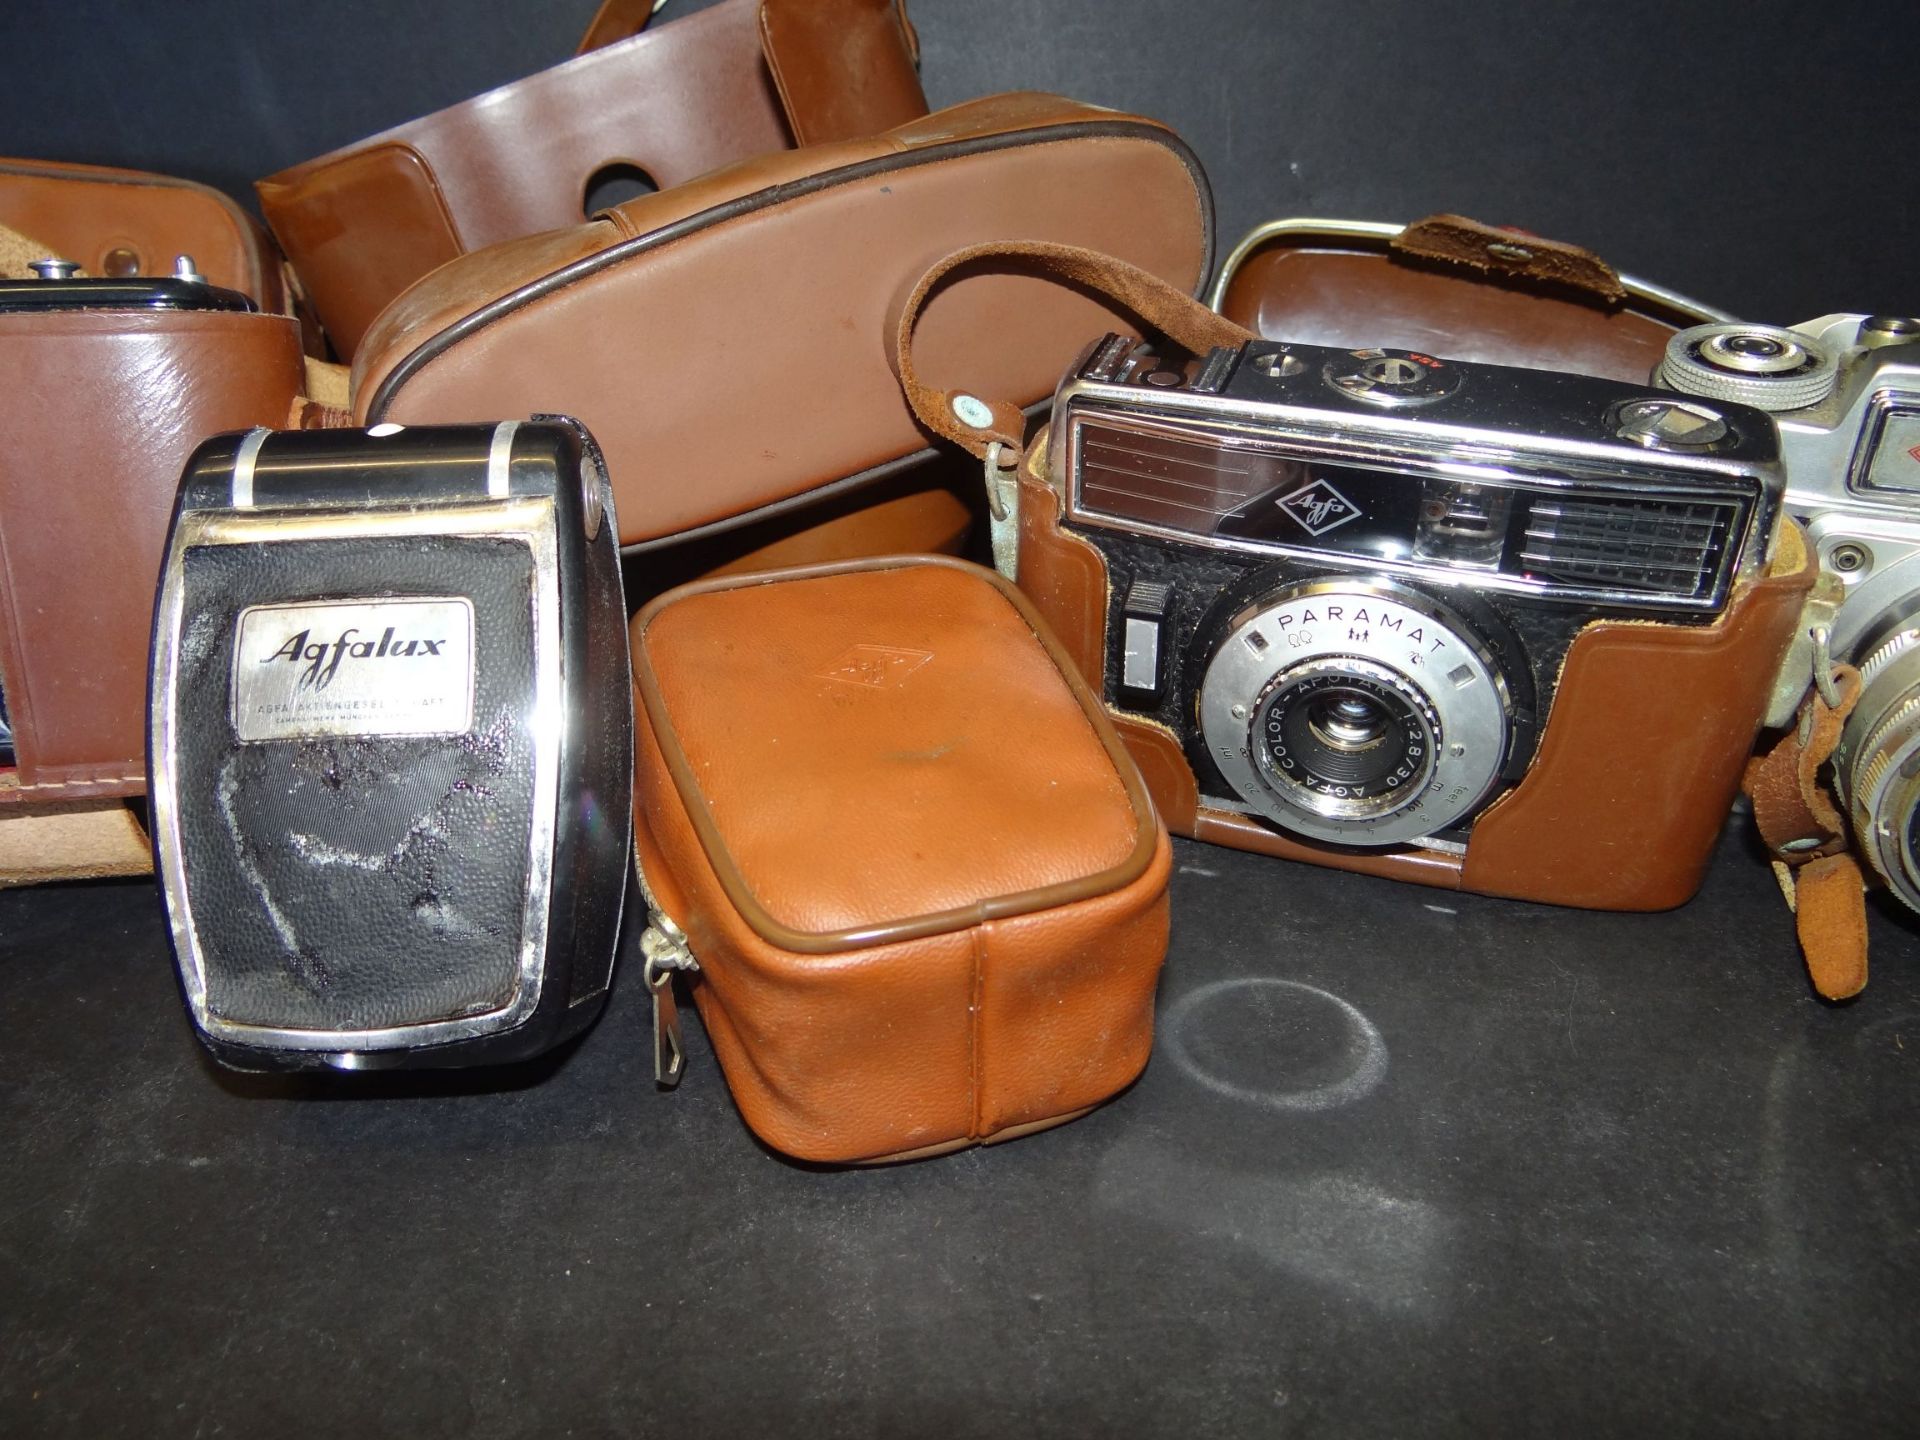 3x Agfa-Fotoapparate in Taschen mit Zubehör, Click 1, Ambi Silette und Parama - Bild 5 aus 5